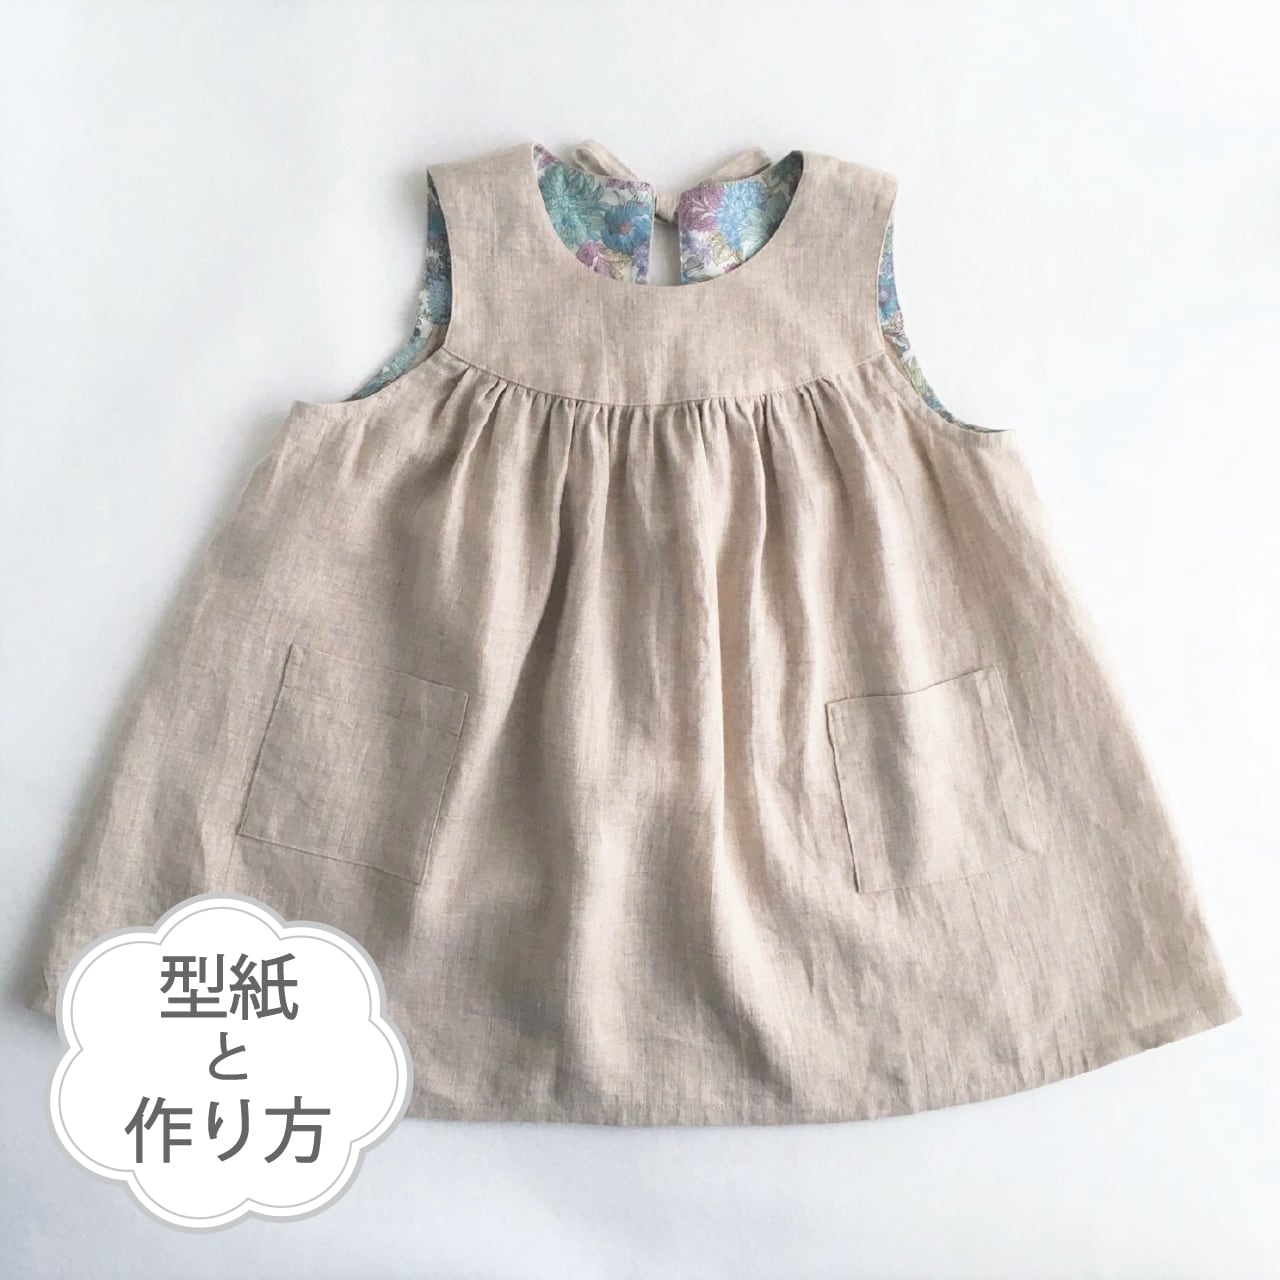 エプロンワンピース 型紙 作り方のセット Op 24 子供服の型紙ショップ Tsukuro ツクロ